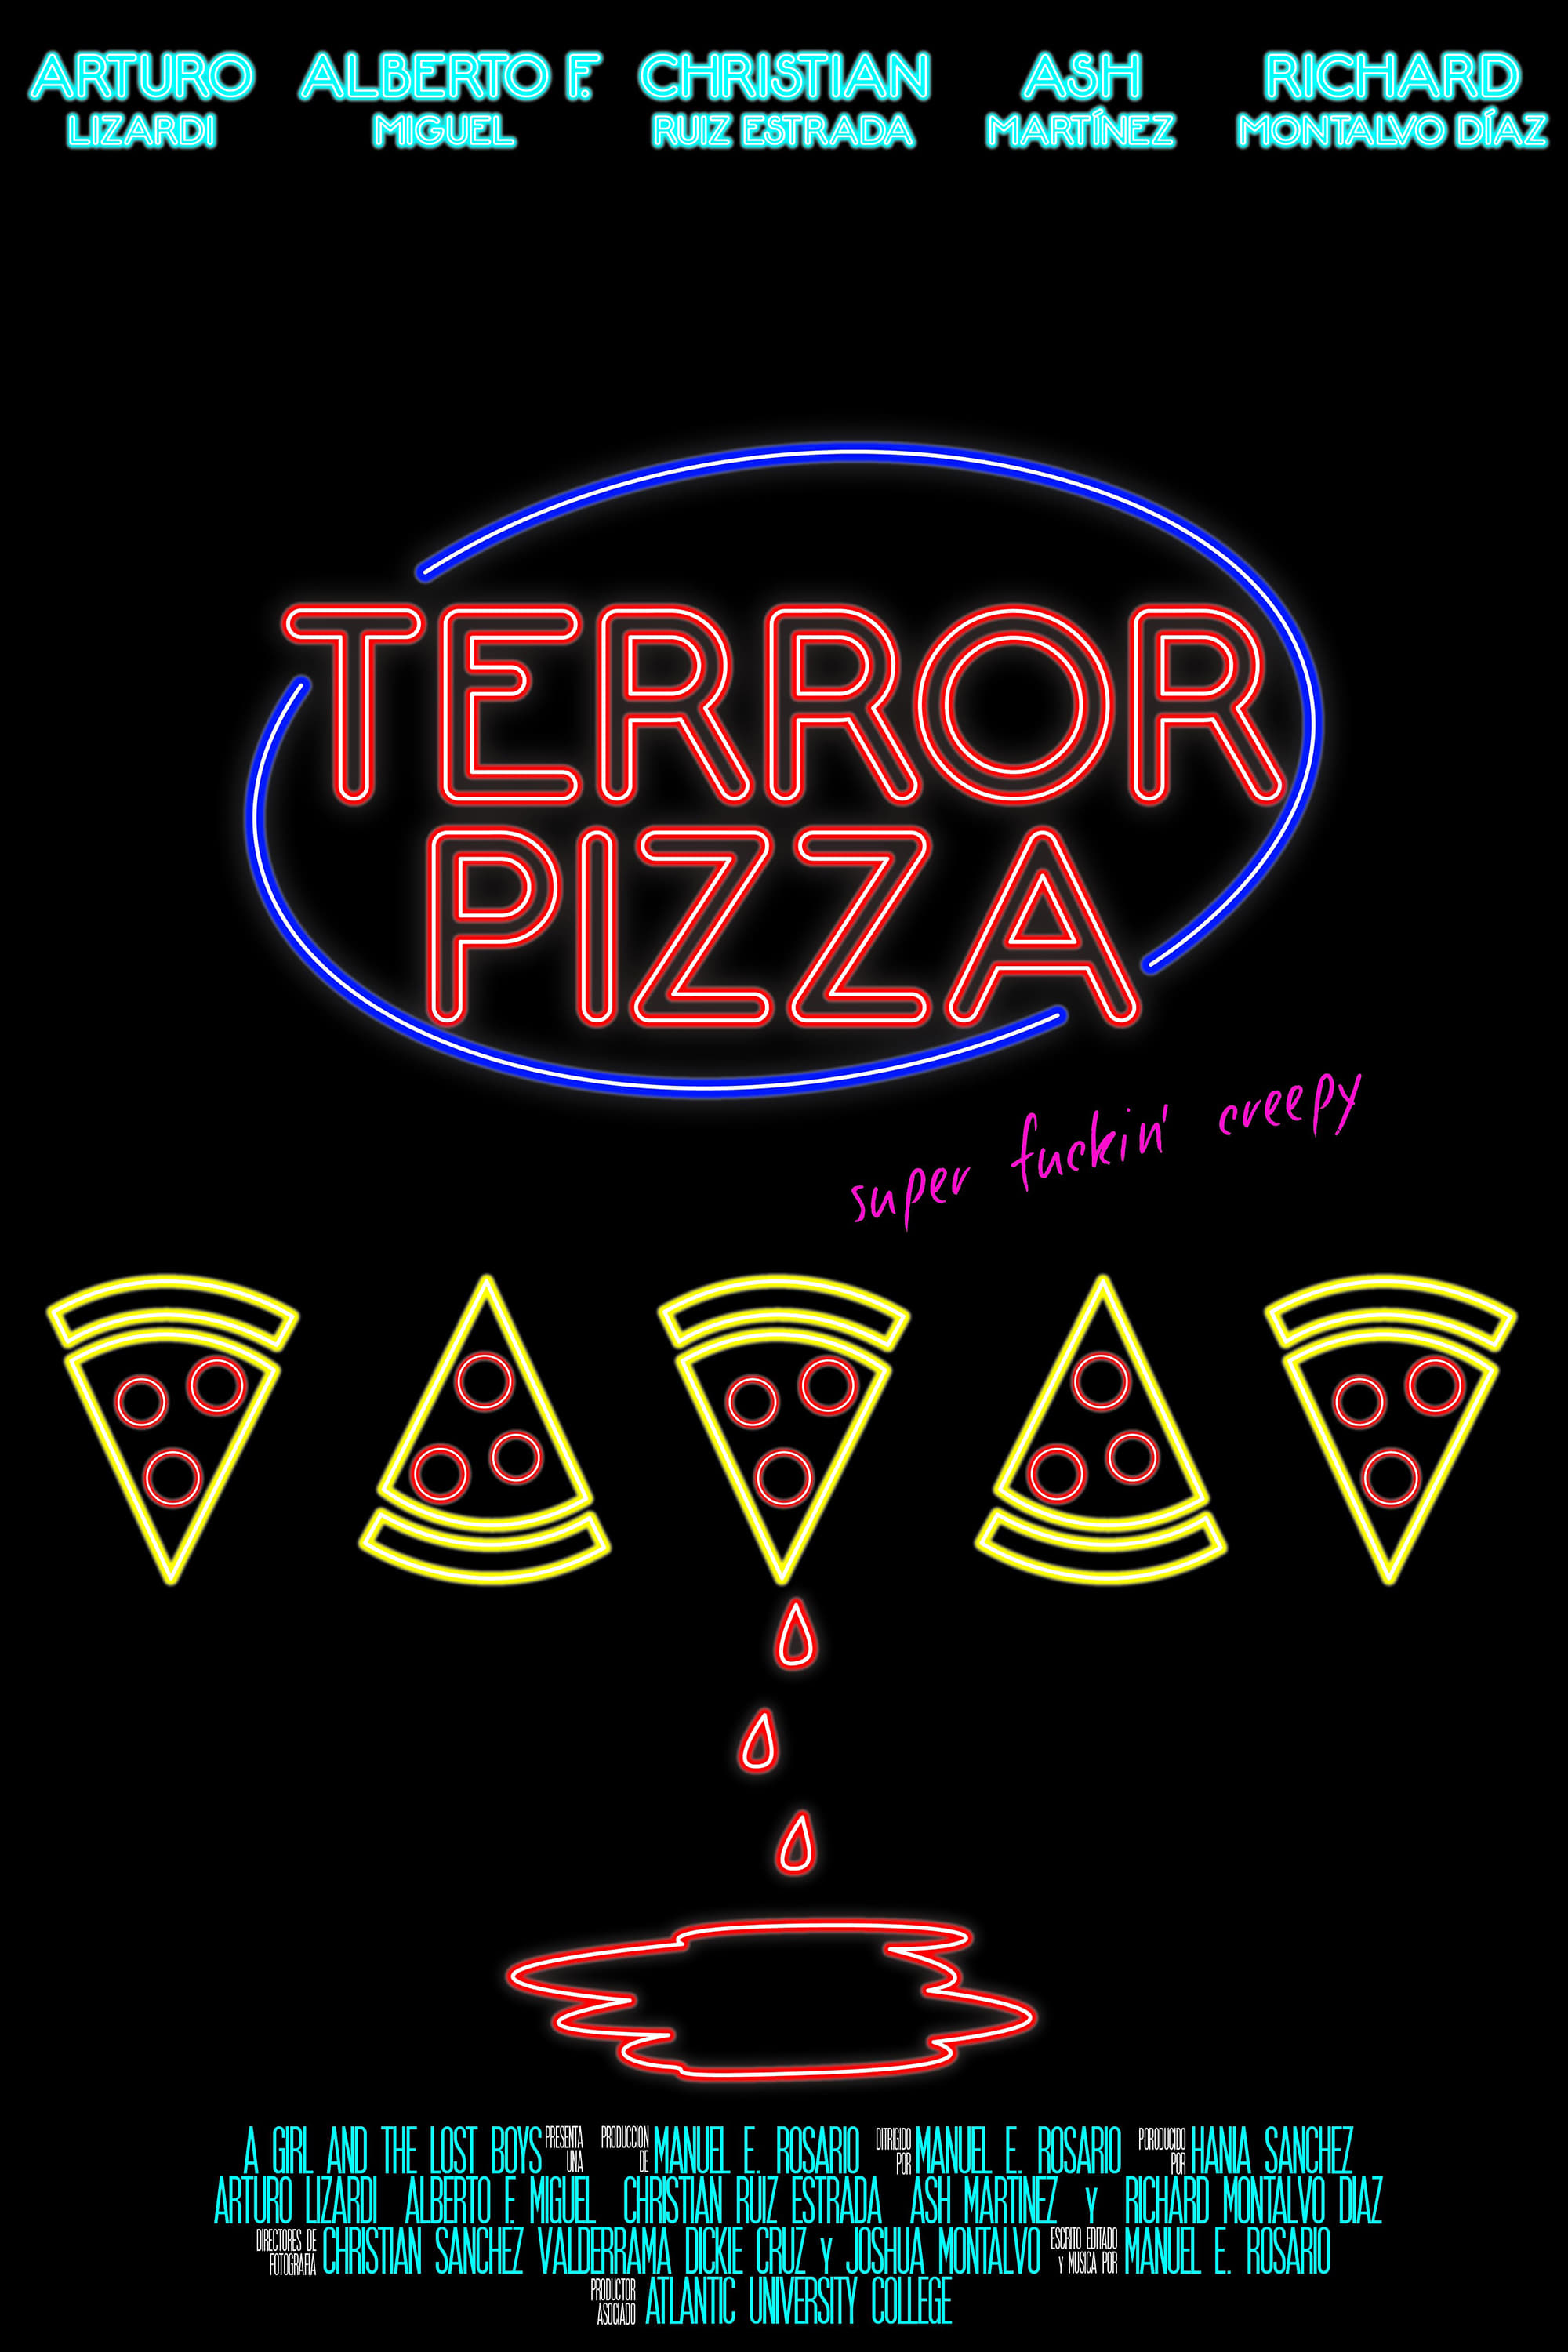 Terror Pizza